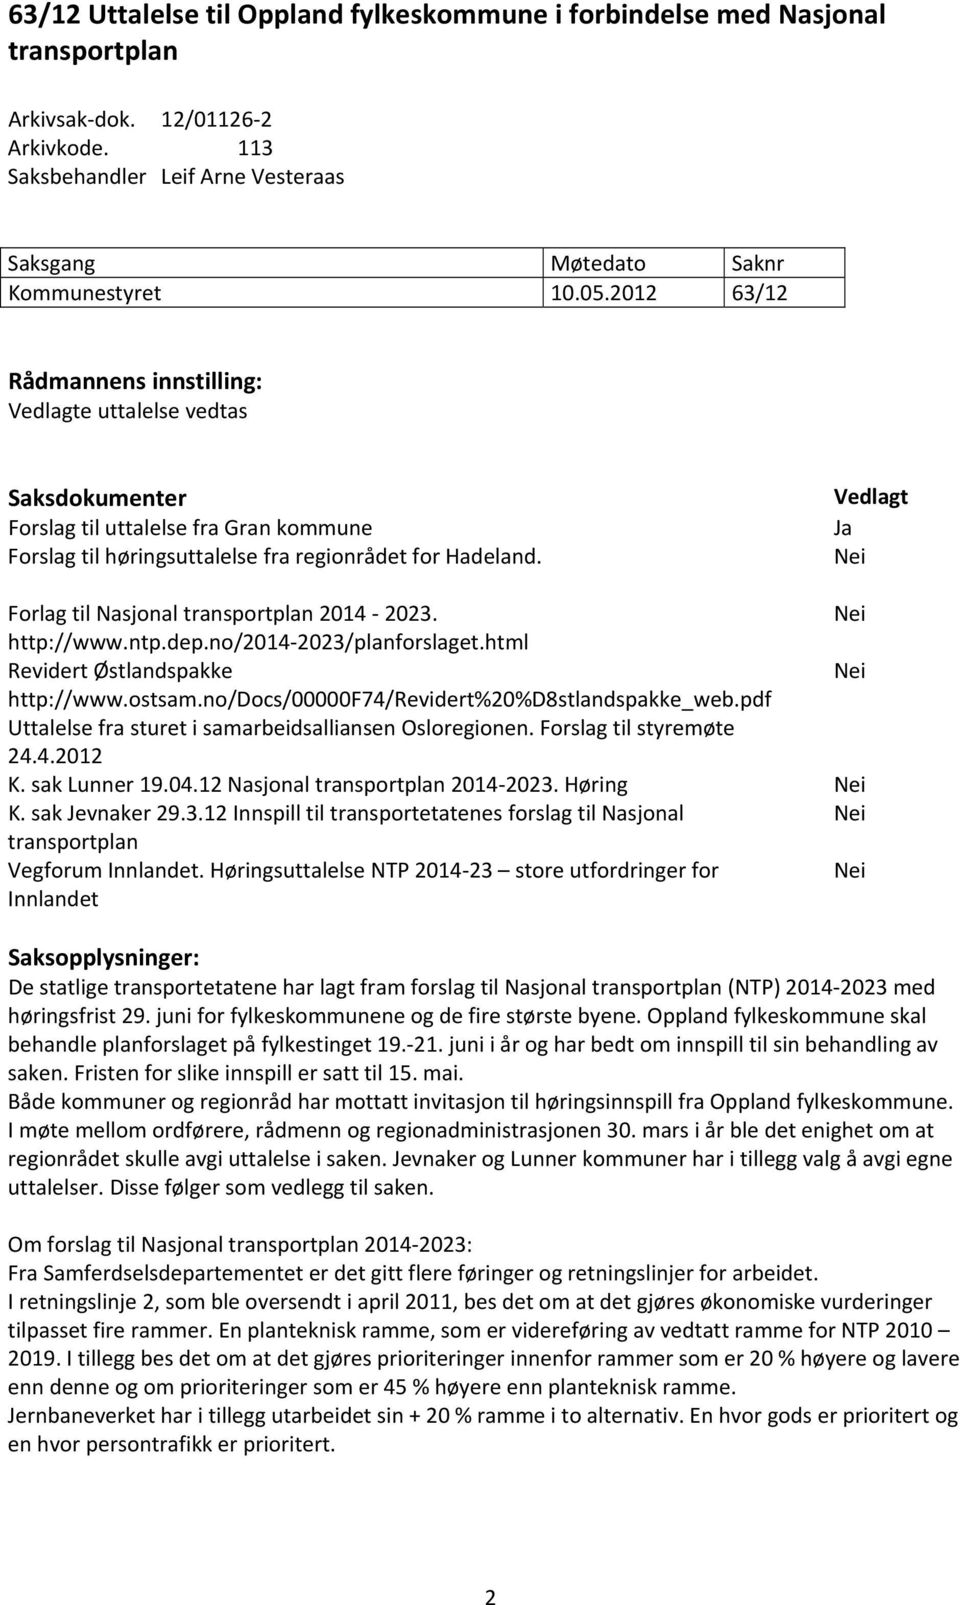 Vedlagt Ja Nei Forlag til Nasjonal transportplan 2014 2023. Nei http://www.ntp.dep.no/2014 2023/planforslaget.html Revidert Østlandspakke Nei http://www.ostsam.